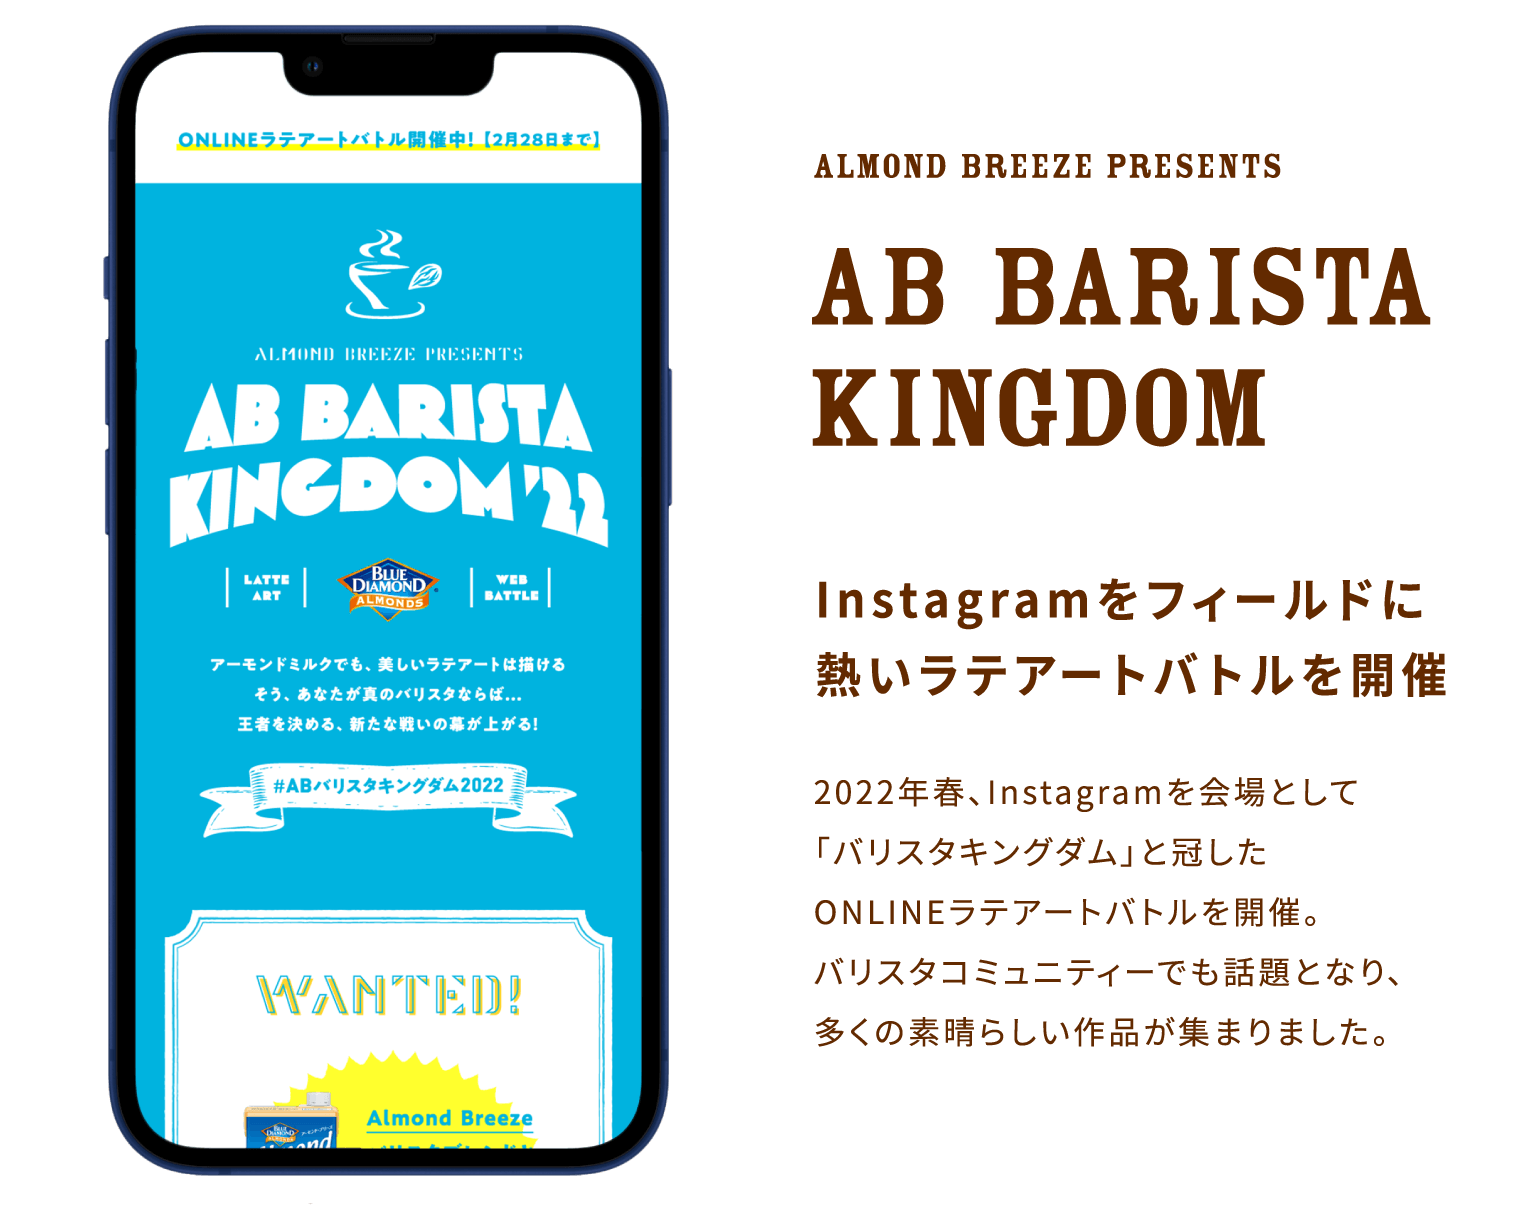 AB BARISTA KINGDOM Instagramをフィールドに熱いラテアートバトルを開催